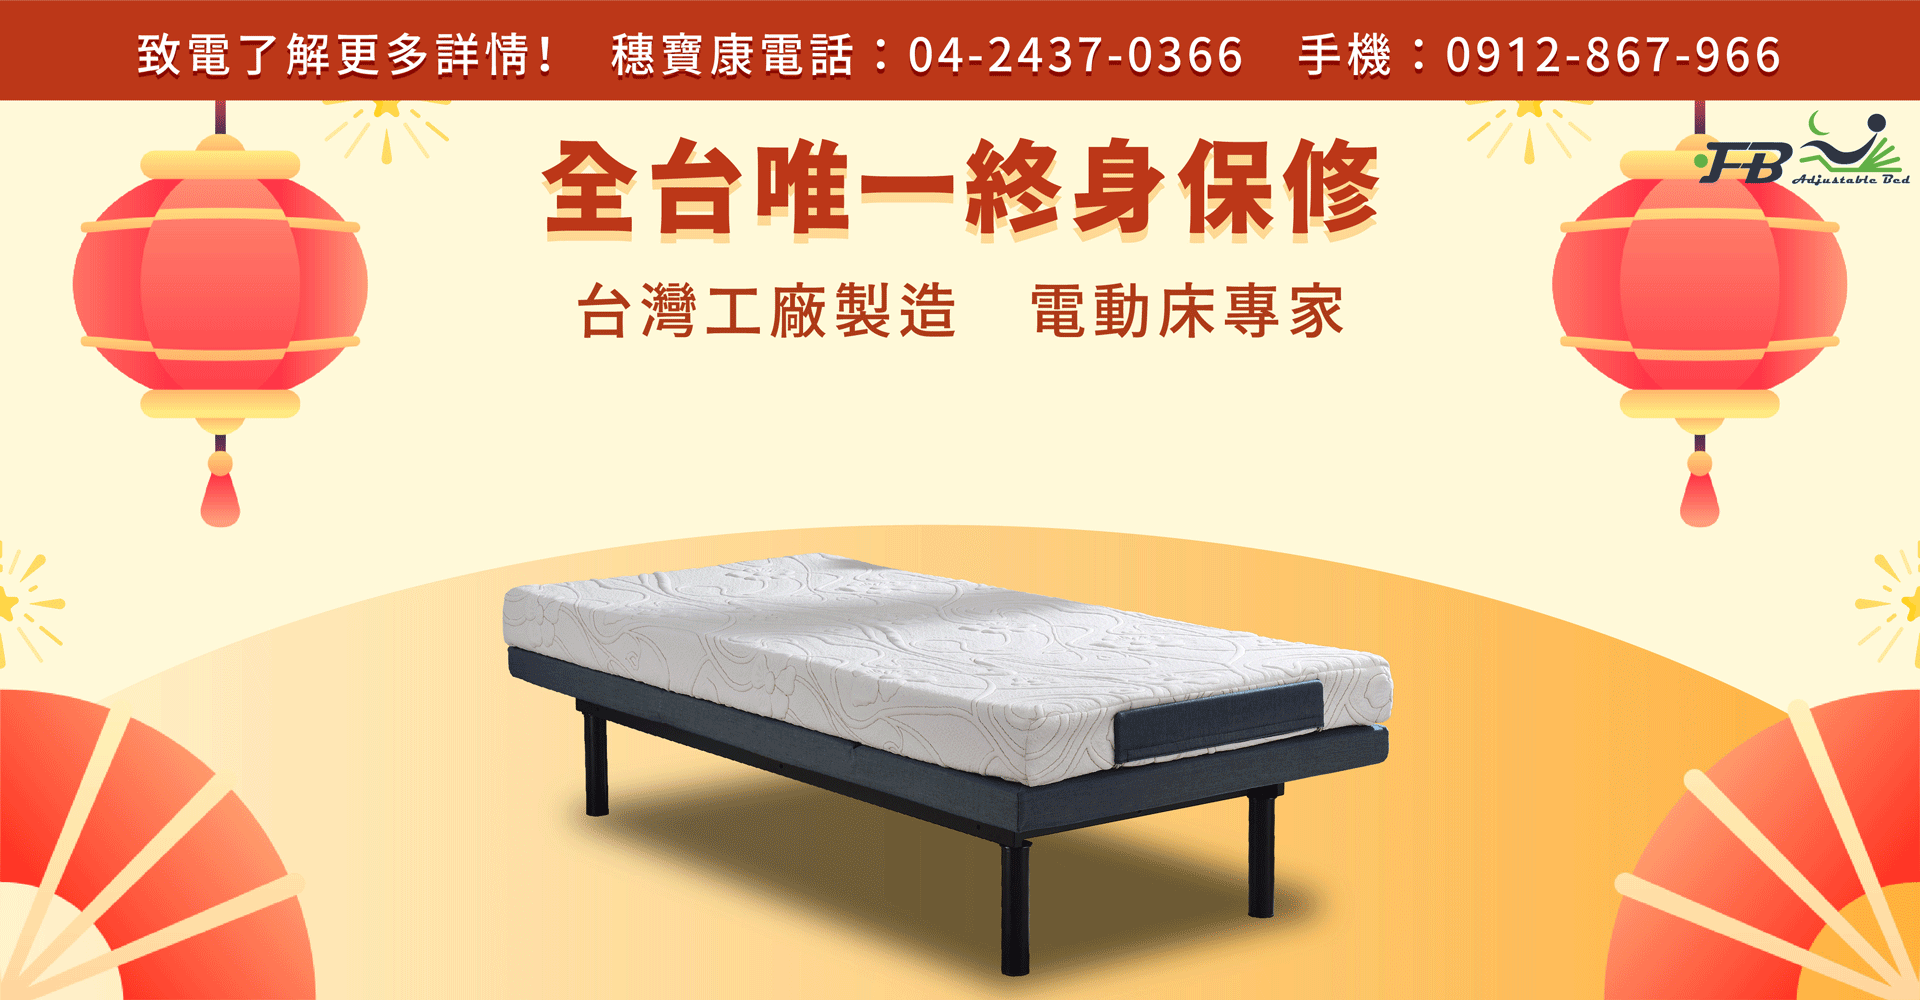 電動床、電動床價格、電動床推薦、電動床架